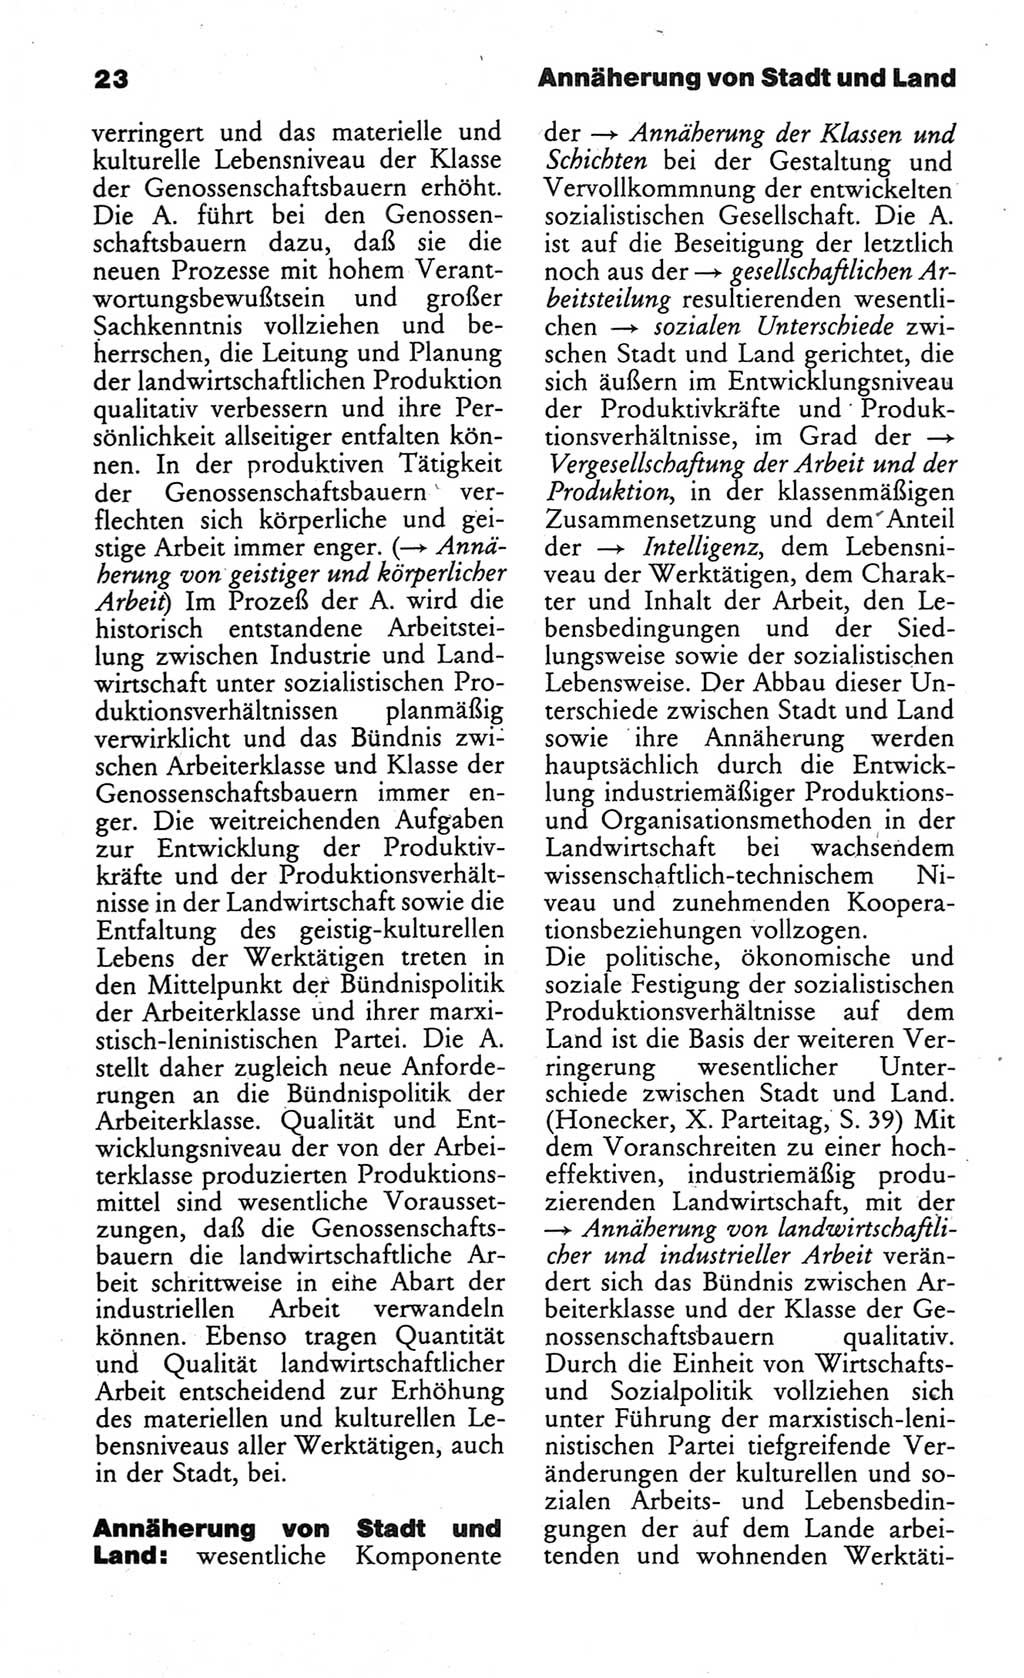 Wörterbuch des wissenschaftlichen Kommunismus [Deutsche Demokratische Republik (DDR)] 1984, Seite 23 (Wb. wiss. Komm. DDR 1984, S. 23)